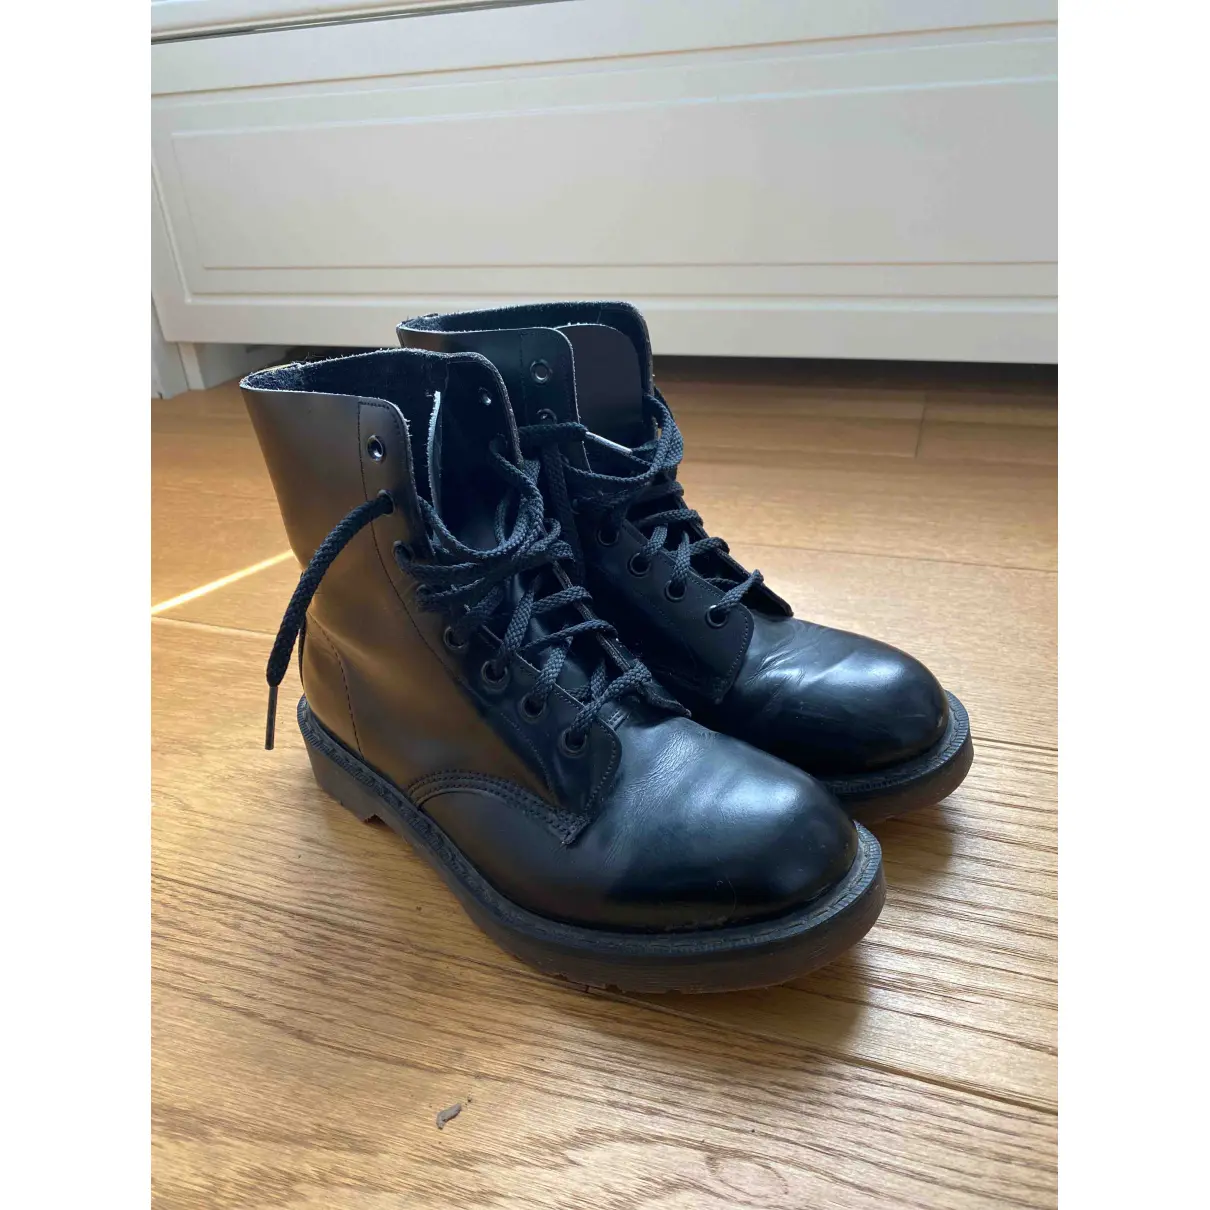 Buy Dr. Martens 1460 Pascal (8 eye) leather biker boots online - Vintage